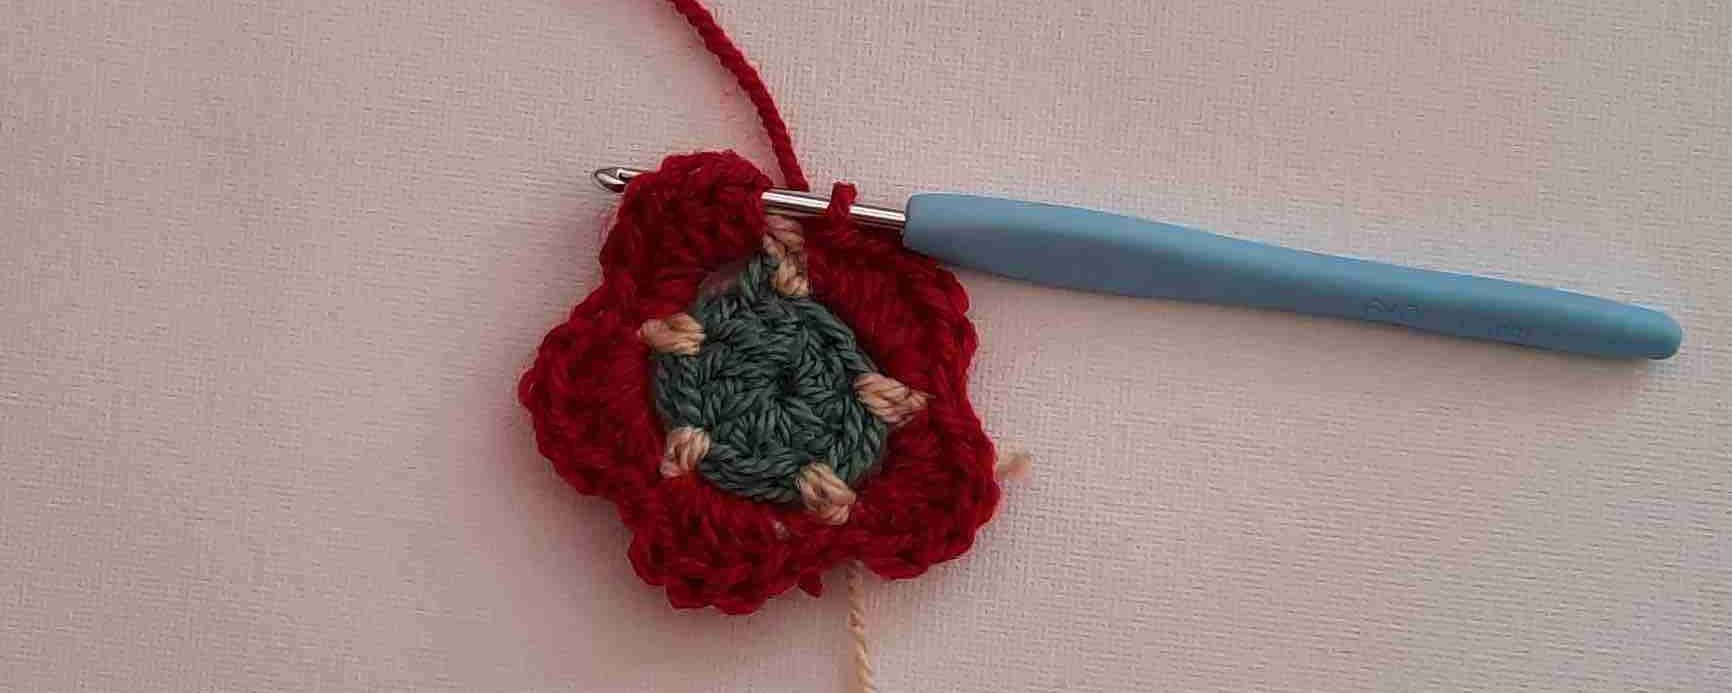 Maybelline Flower Crochet Pattern 6